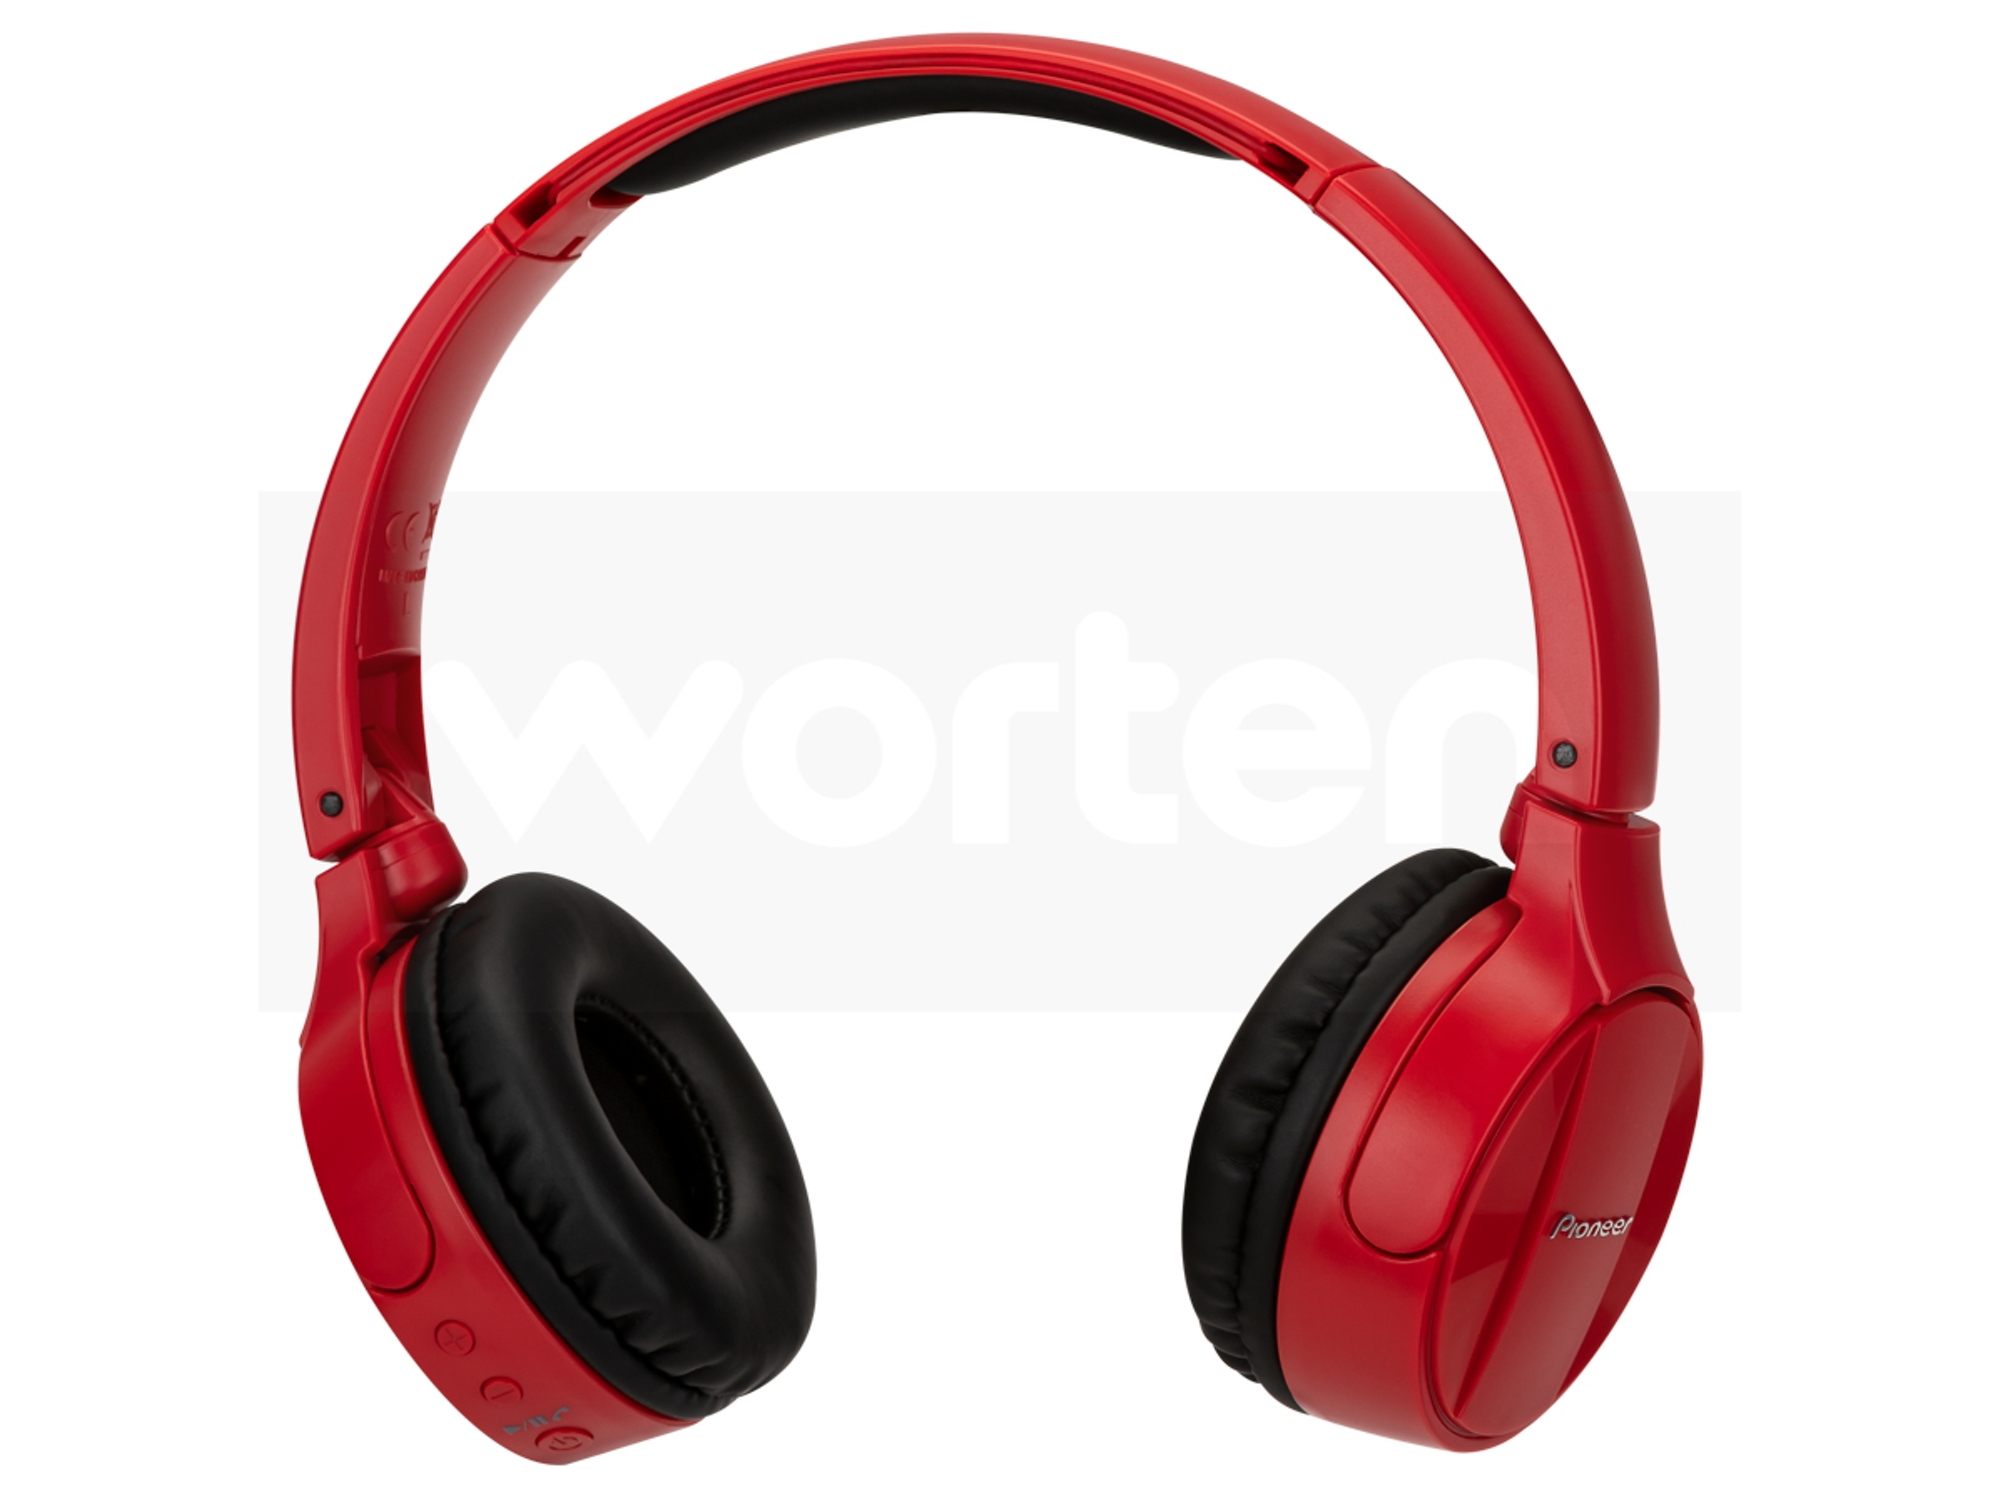 Auricular Bluetooth Pioneer semj553btr semj553bt rojo diadema nfc manos libres apple android windows plegables de con externos para smartphones y micrófono 10 hz 22000